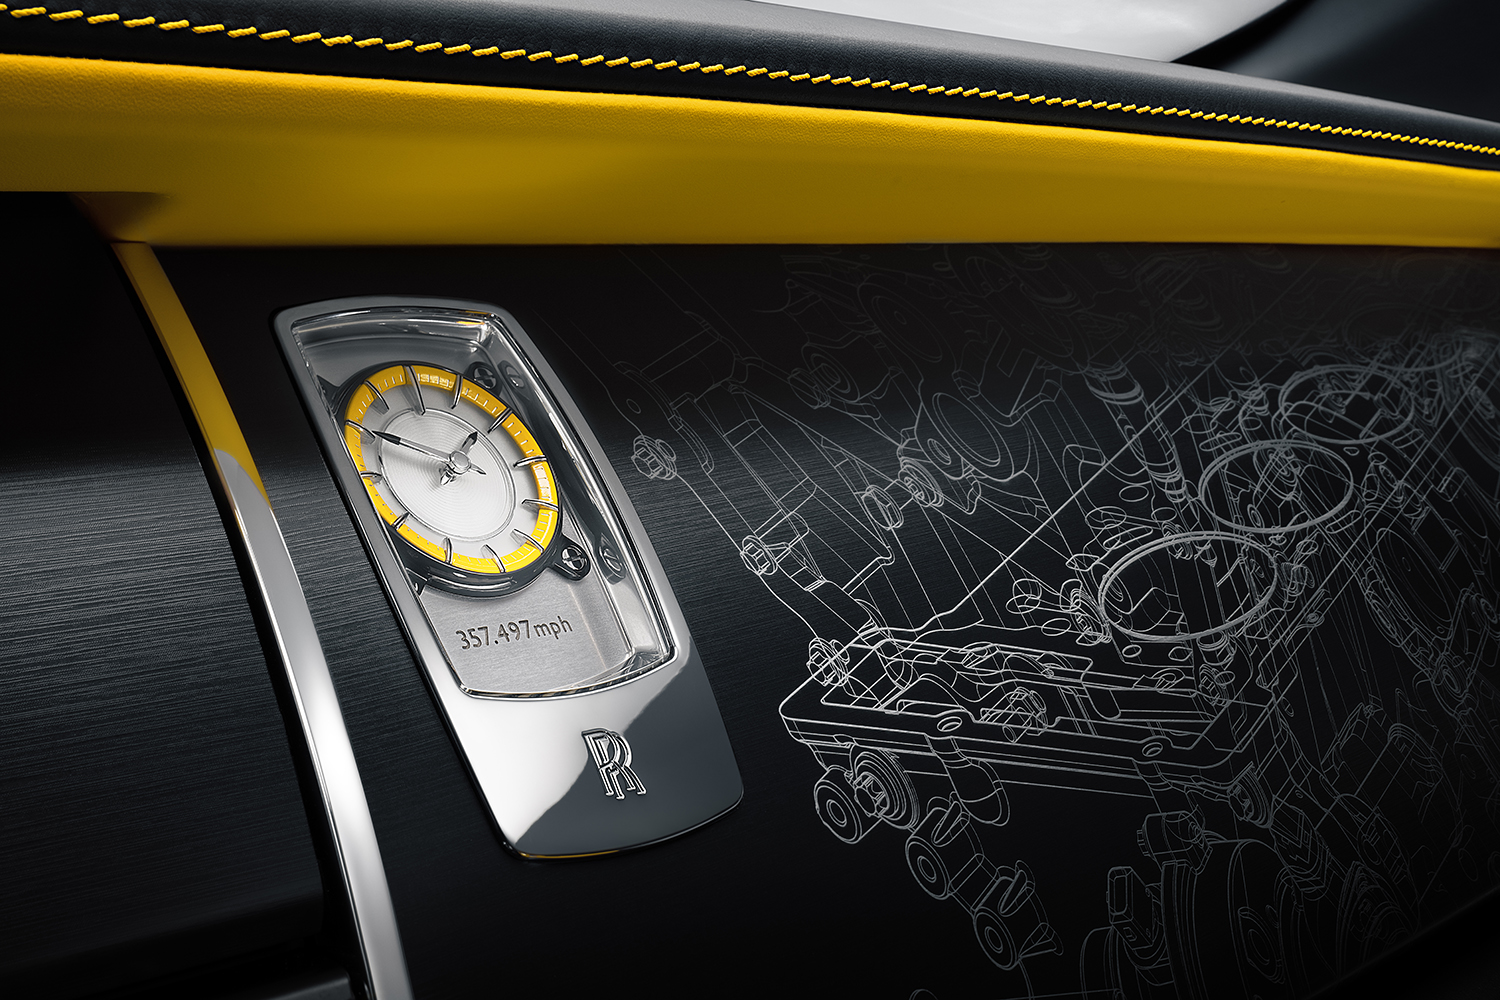 ロールス・ロイス ブラックバッジ レイス ブラックアローのインテリアパネルの時計とエンジンの絵 〜 画像21